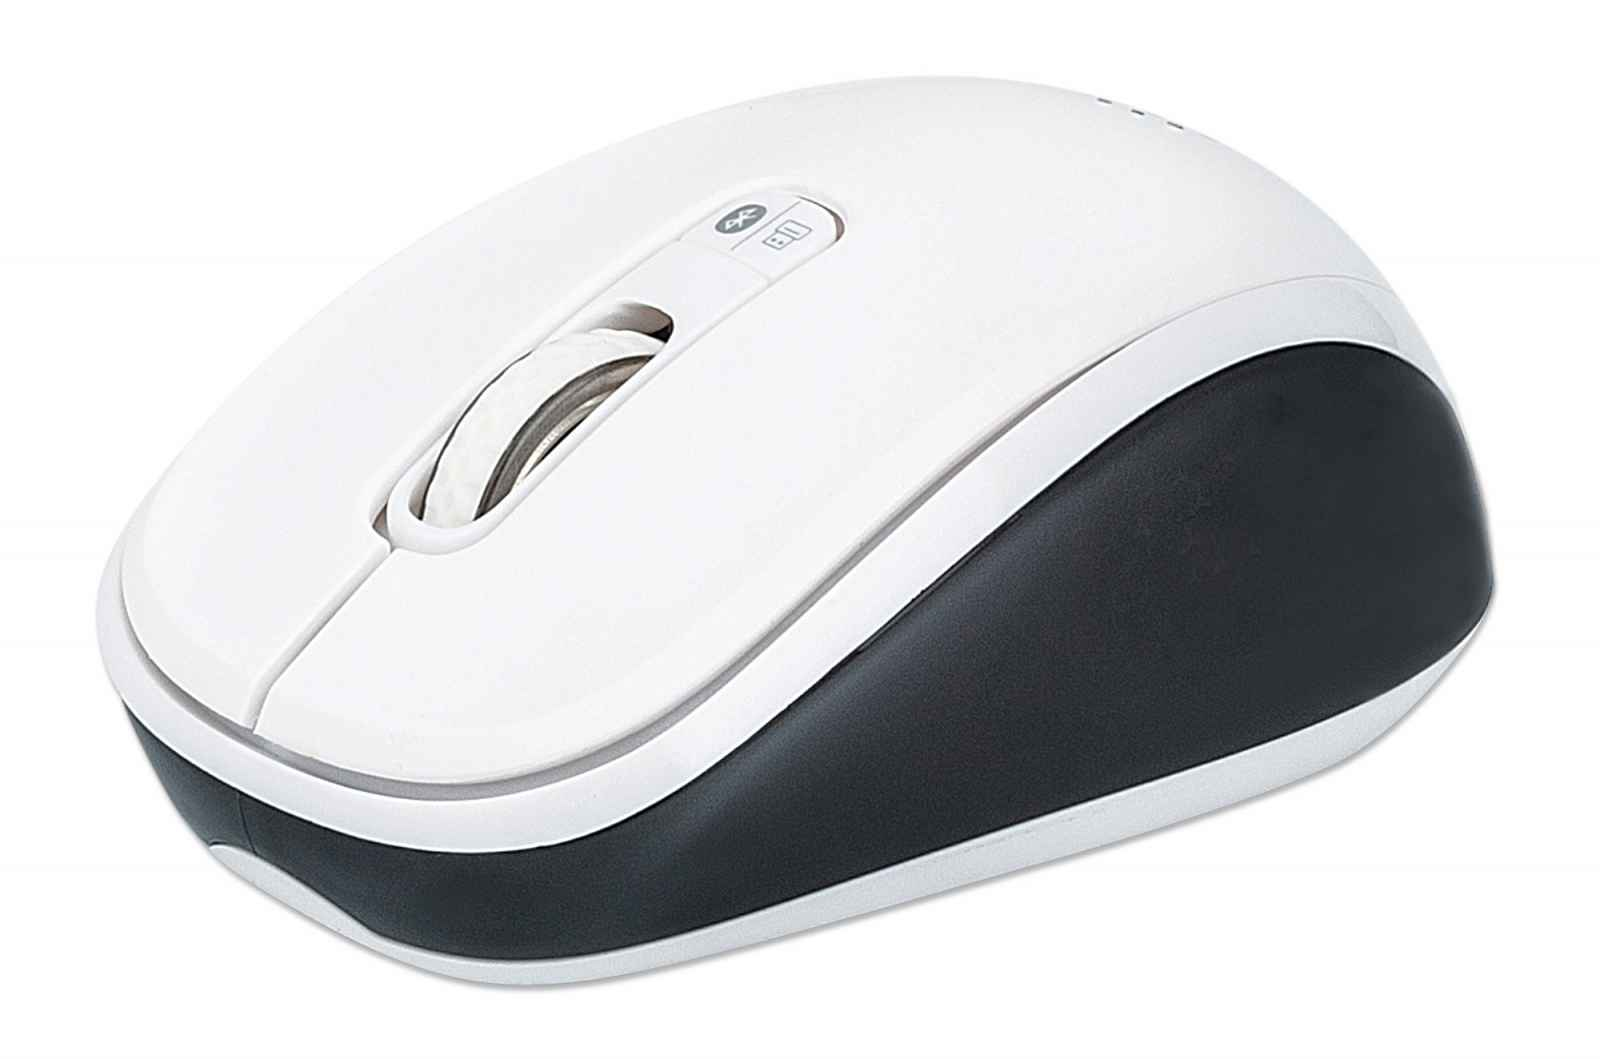 Manhattan Dual-Mode Mouse, Bluetooth 4.0 and 2.4 GHz Wireless, 800/1200/1600 dpi, Three Buttons With Scroll Wheel, Black & White, Three Year Warranty, Box - Maus - optisch - 3 Tasten - kabellos - 2.4 GHz, Bluetooth 4.0 - kabelloser Empfänger (USB)